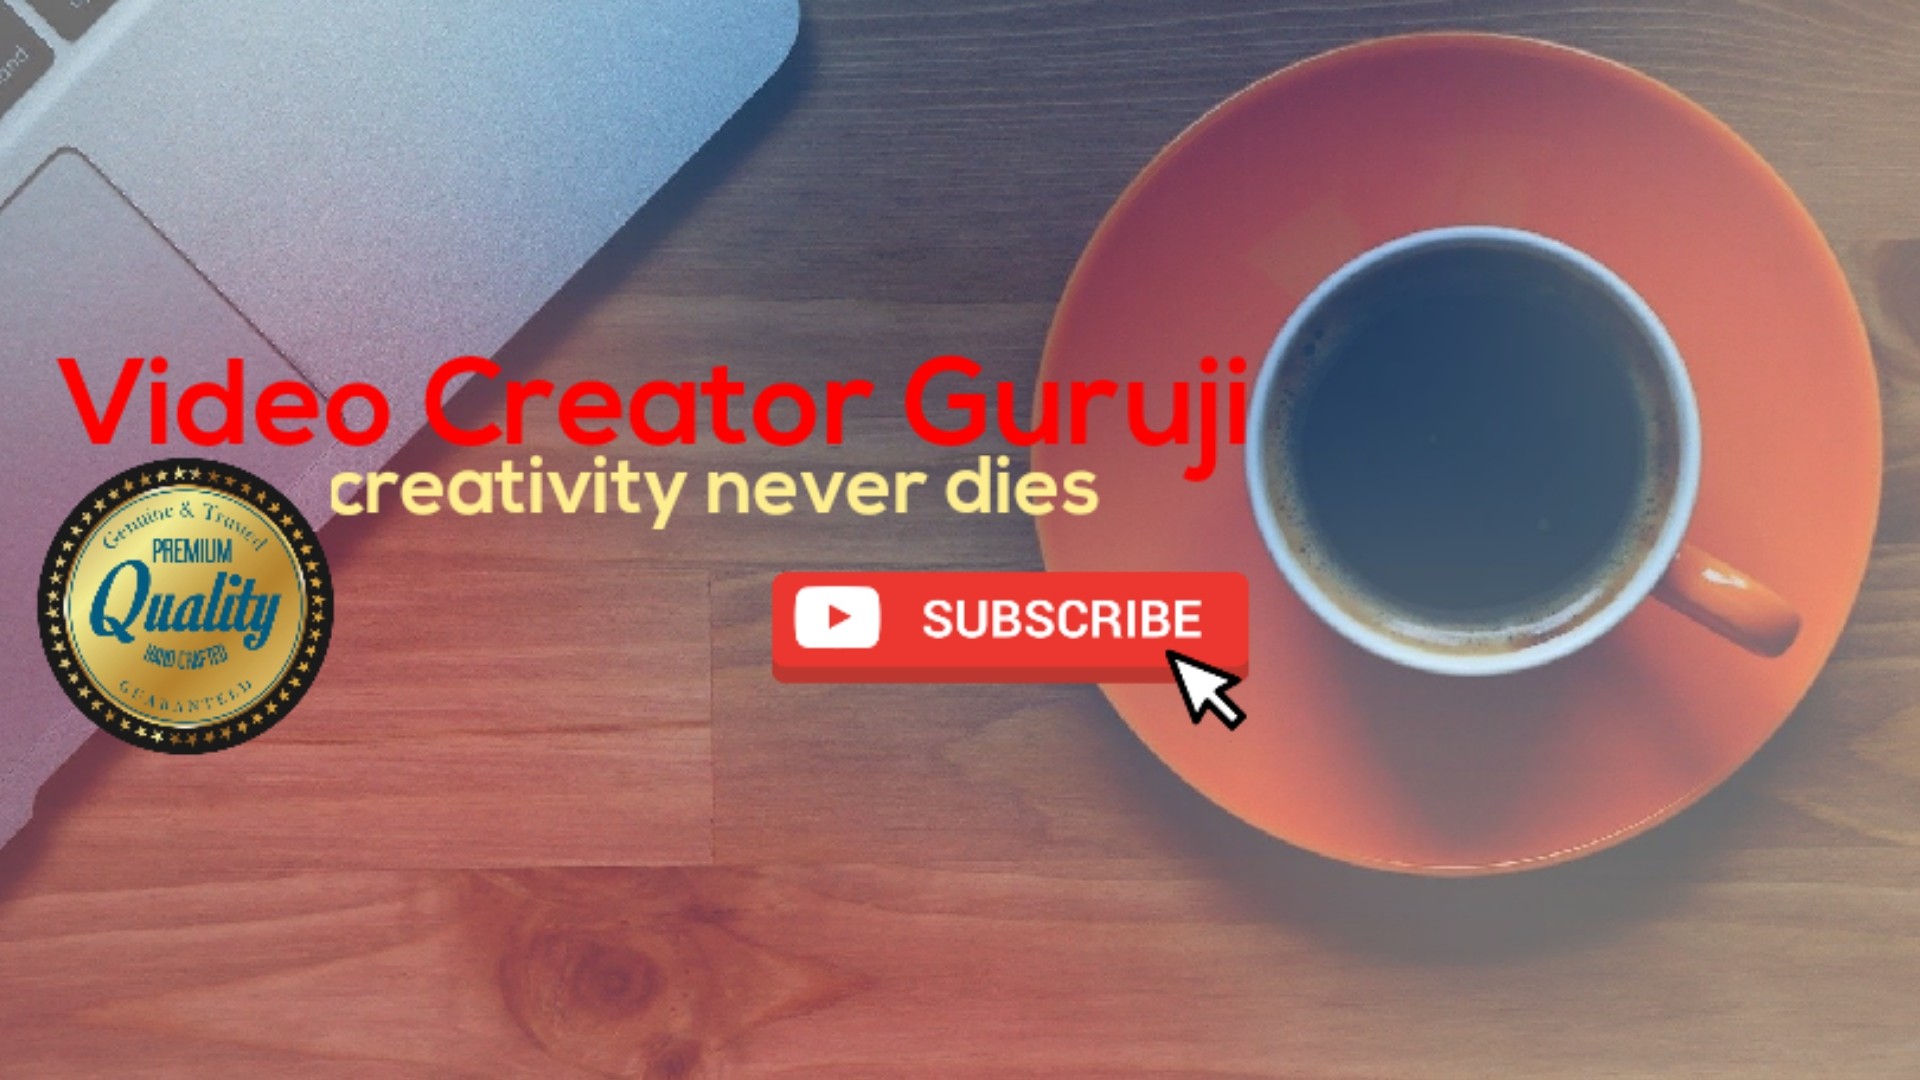 Video Creator Guruji